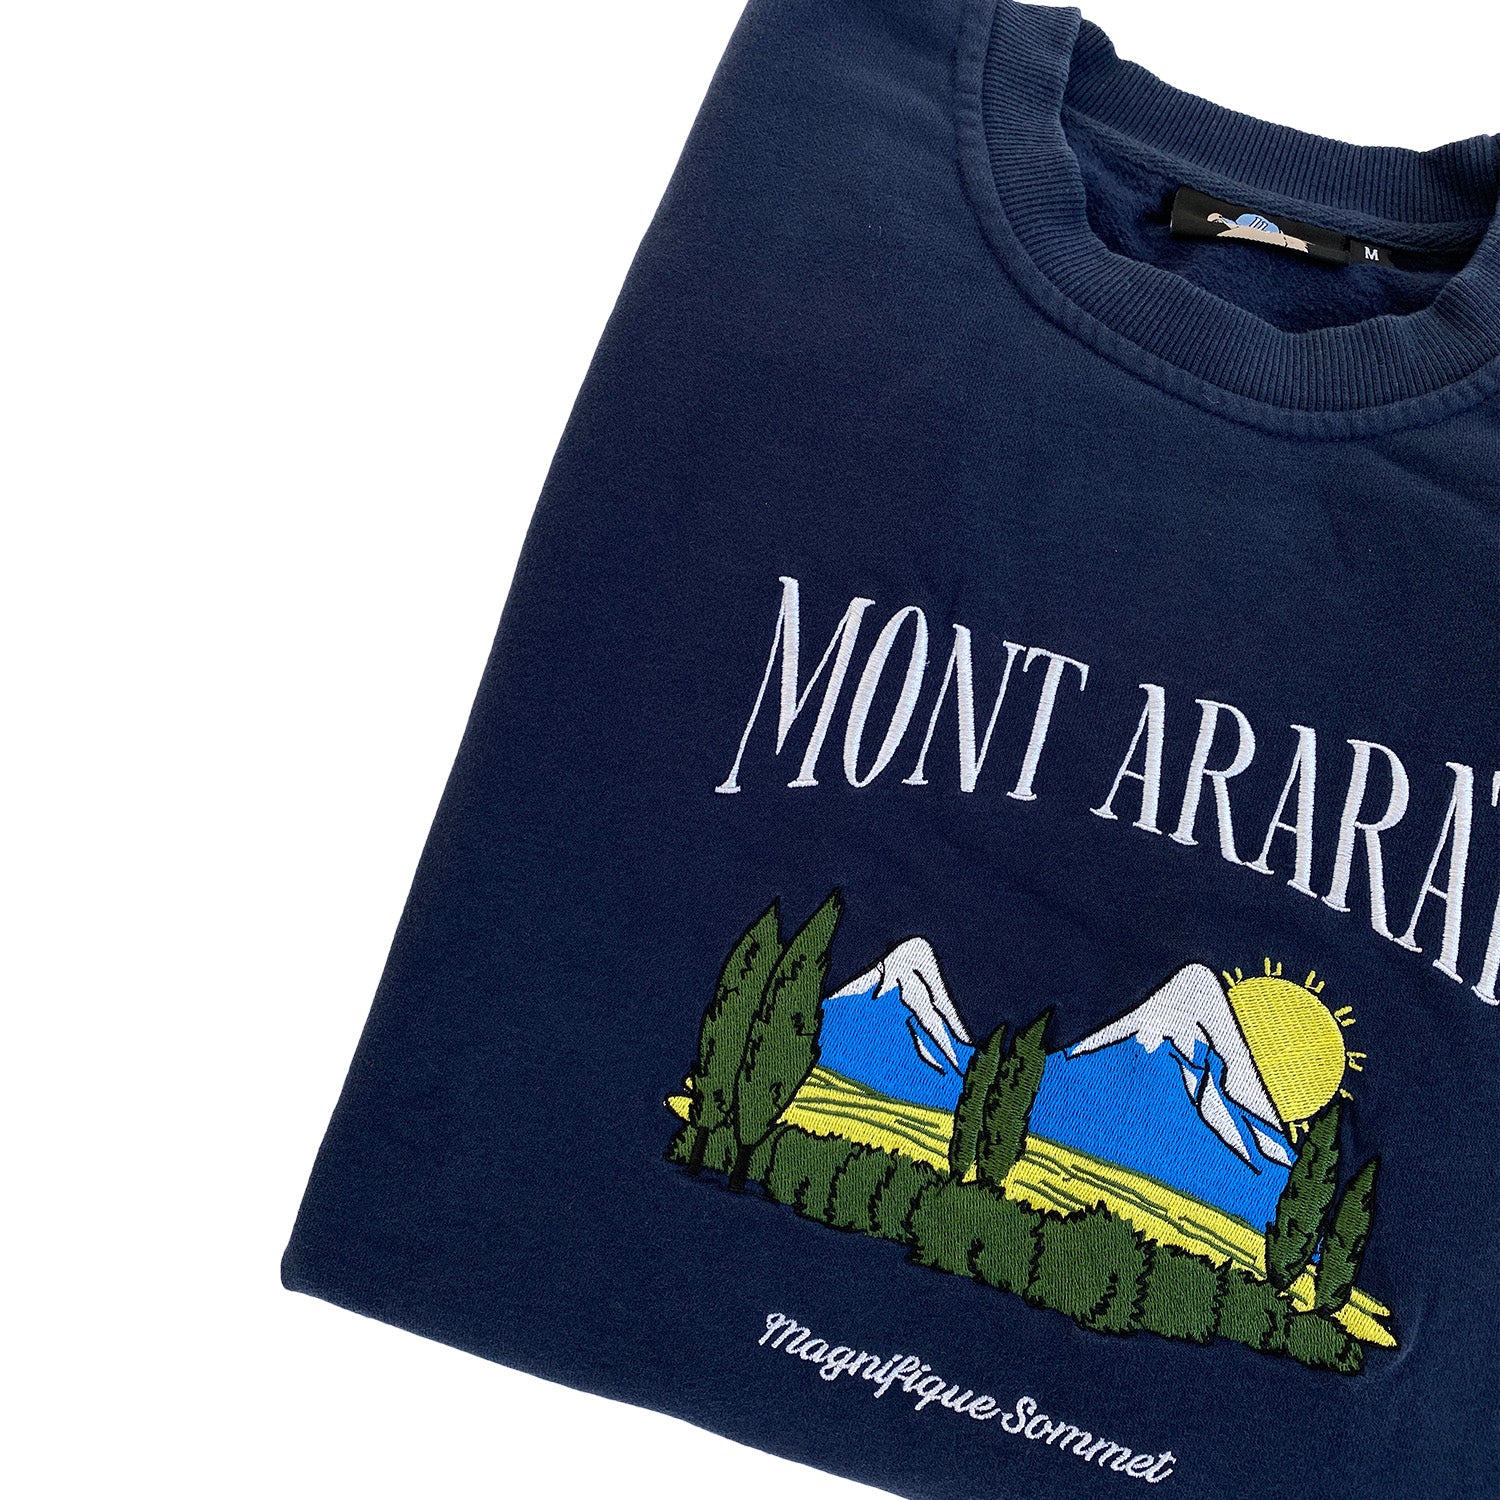 Mont Ararat Vintage Wash Embroidered Sweatshirt